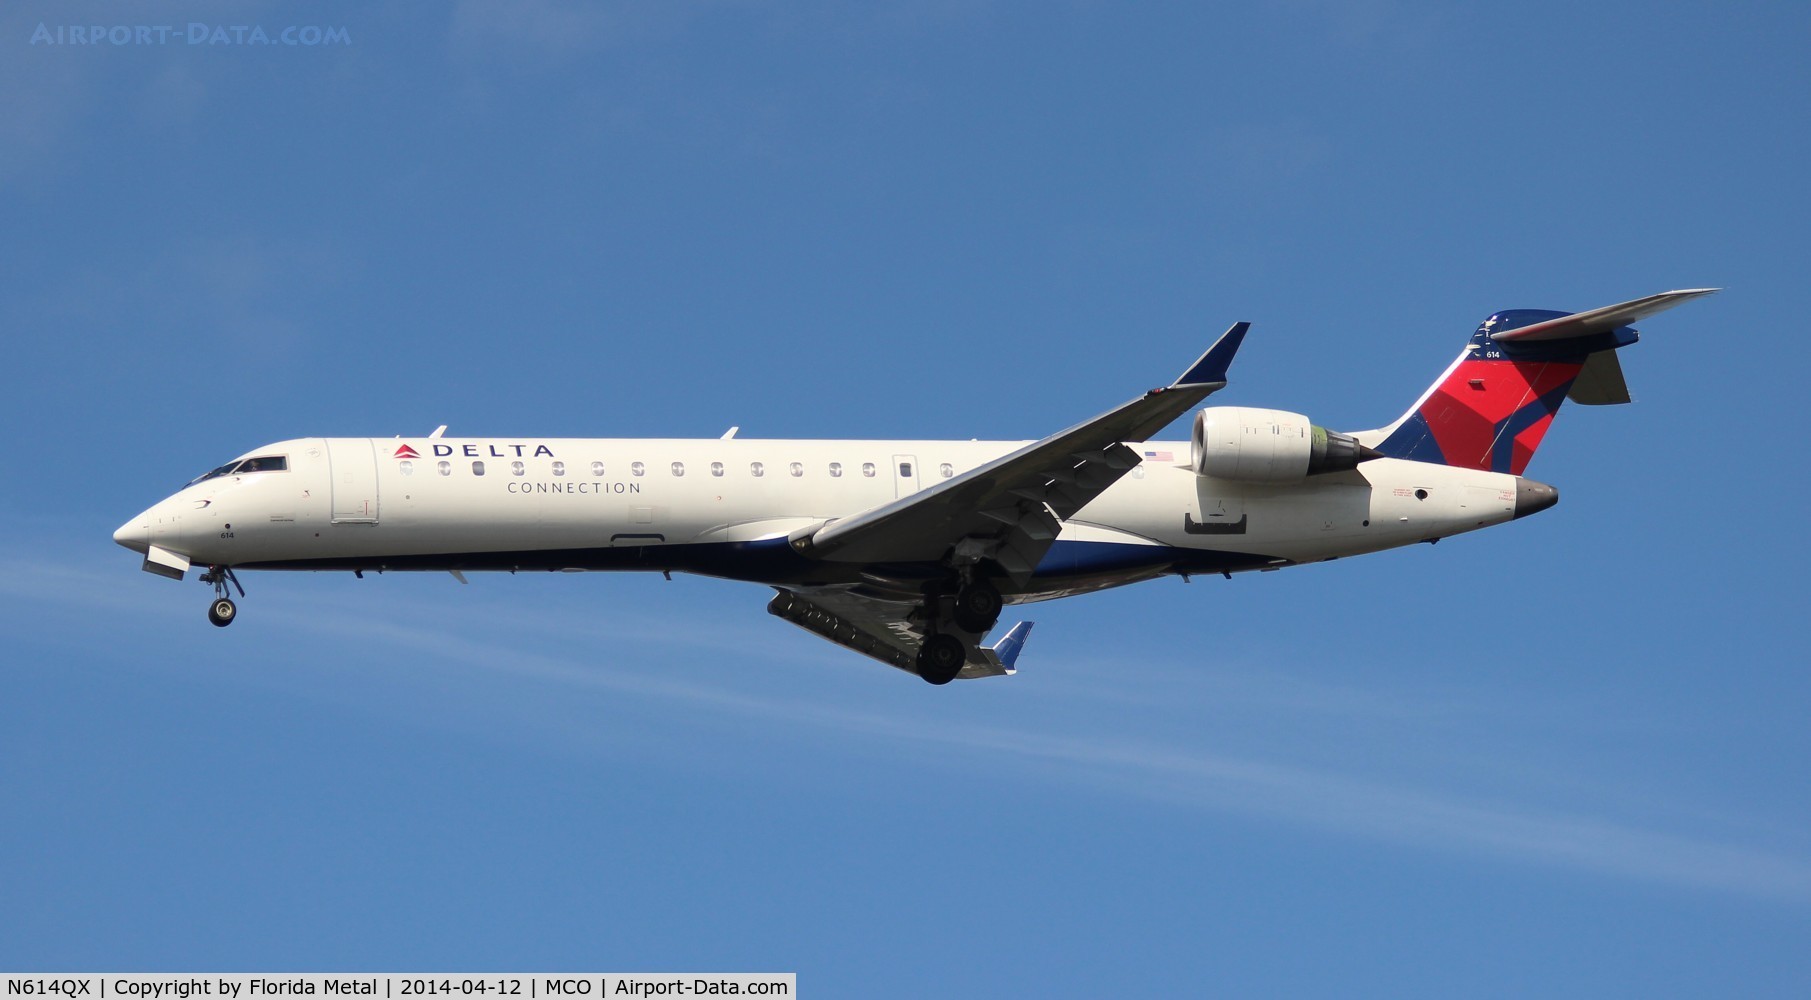 N614QX, 2002 Bombardier CRJ-701 (CL-600-2C10) Regional Jet C/N 10049, Delta Connection